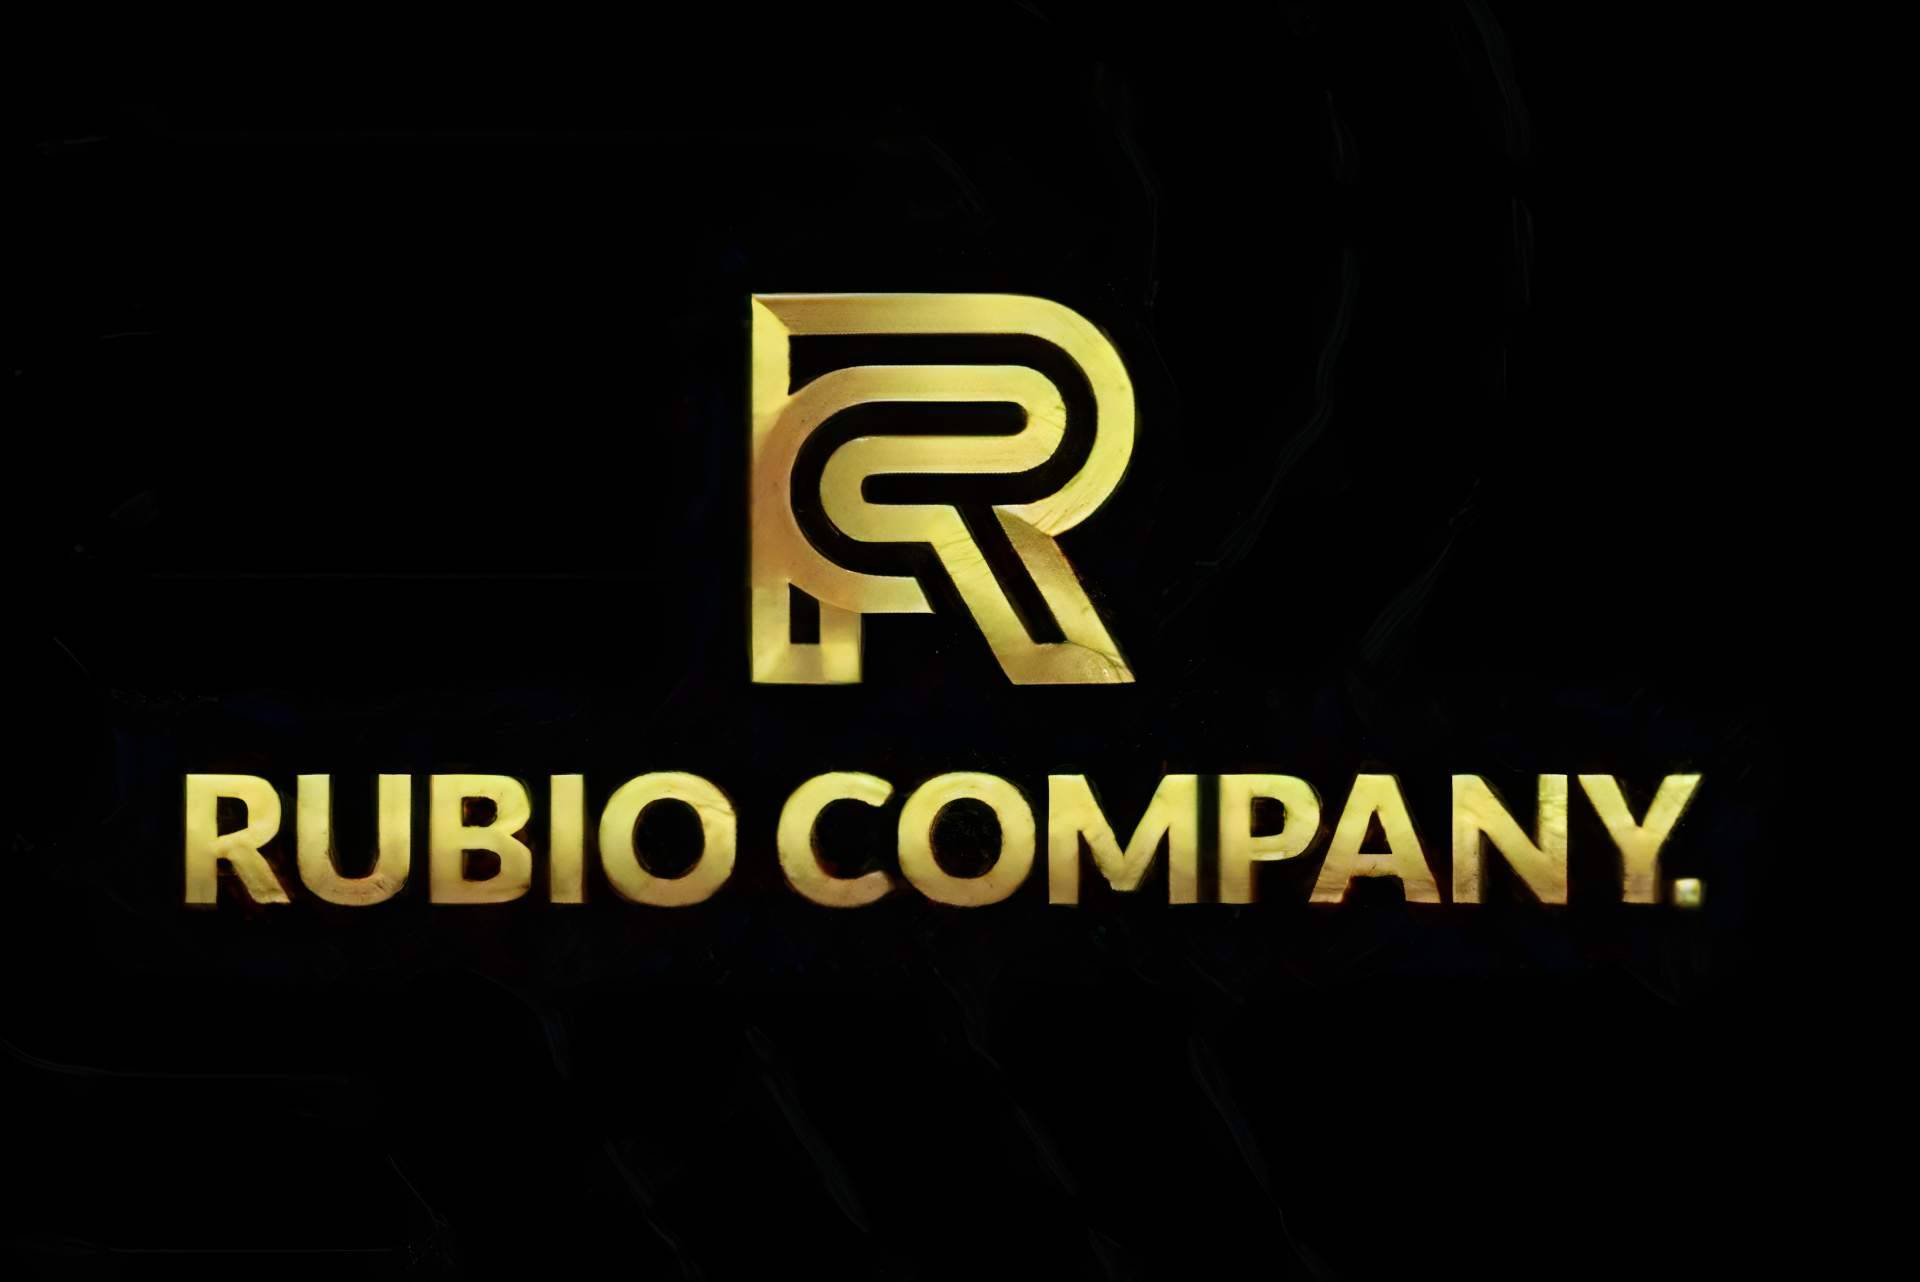 Rubio Company, el aliado para hacer todo tipo de reformas